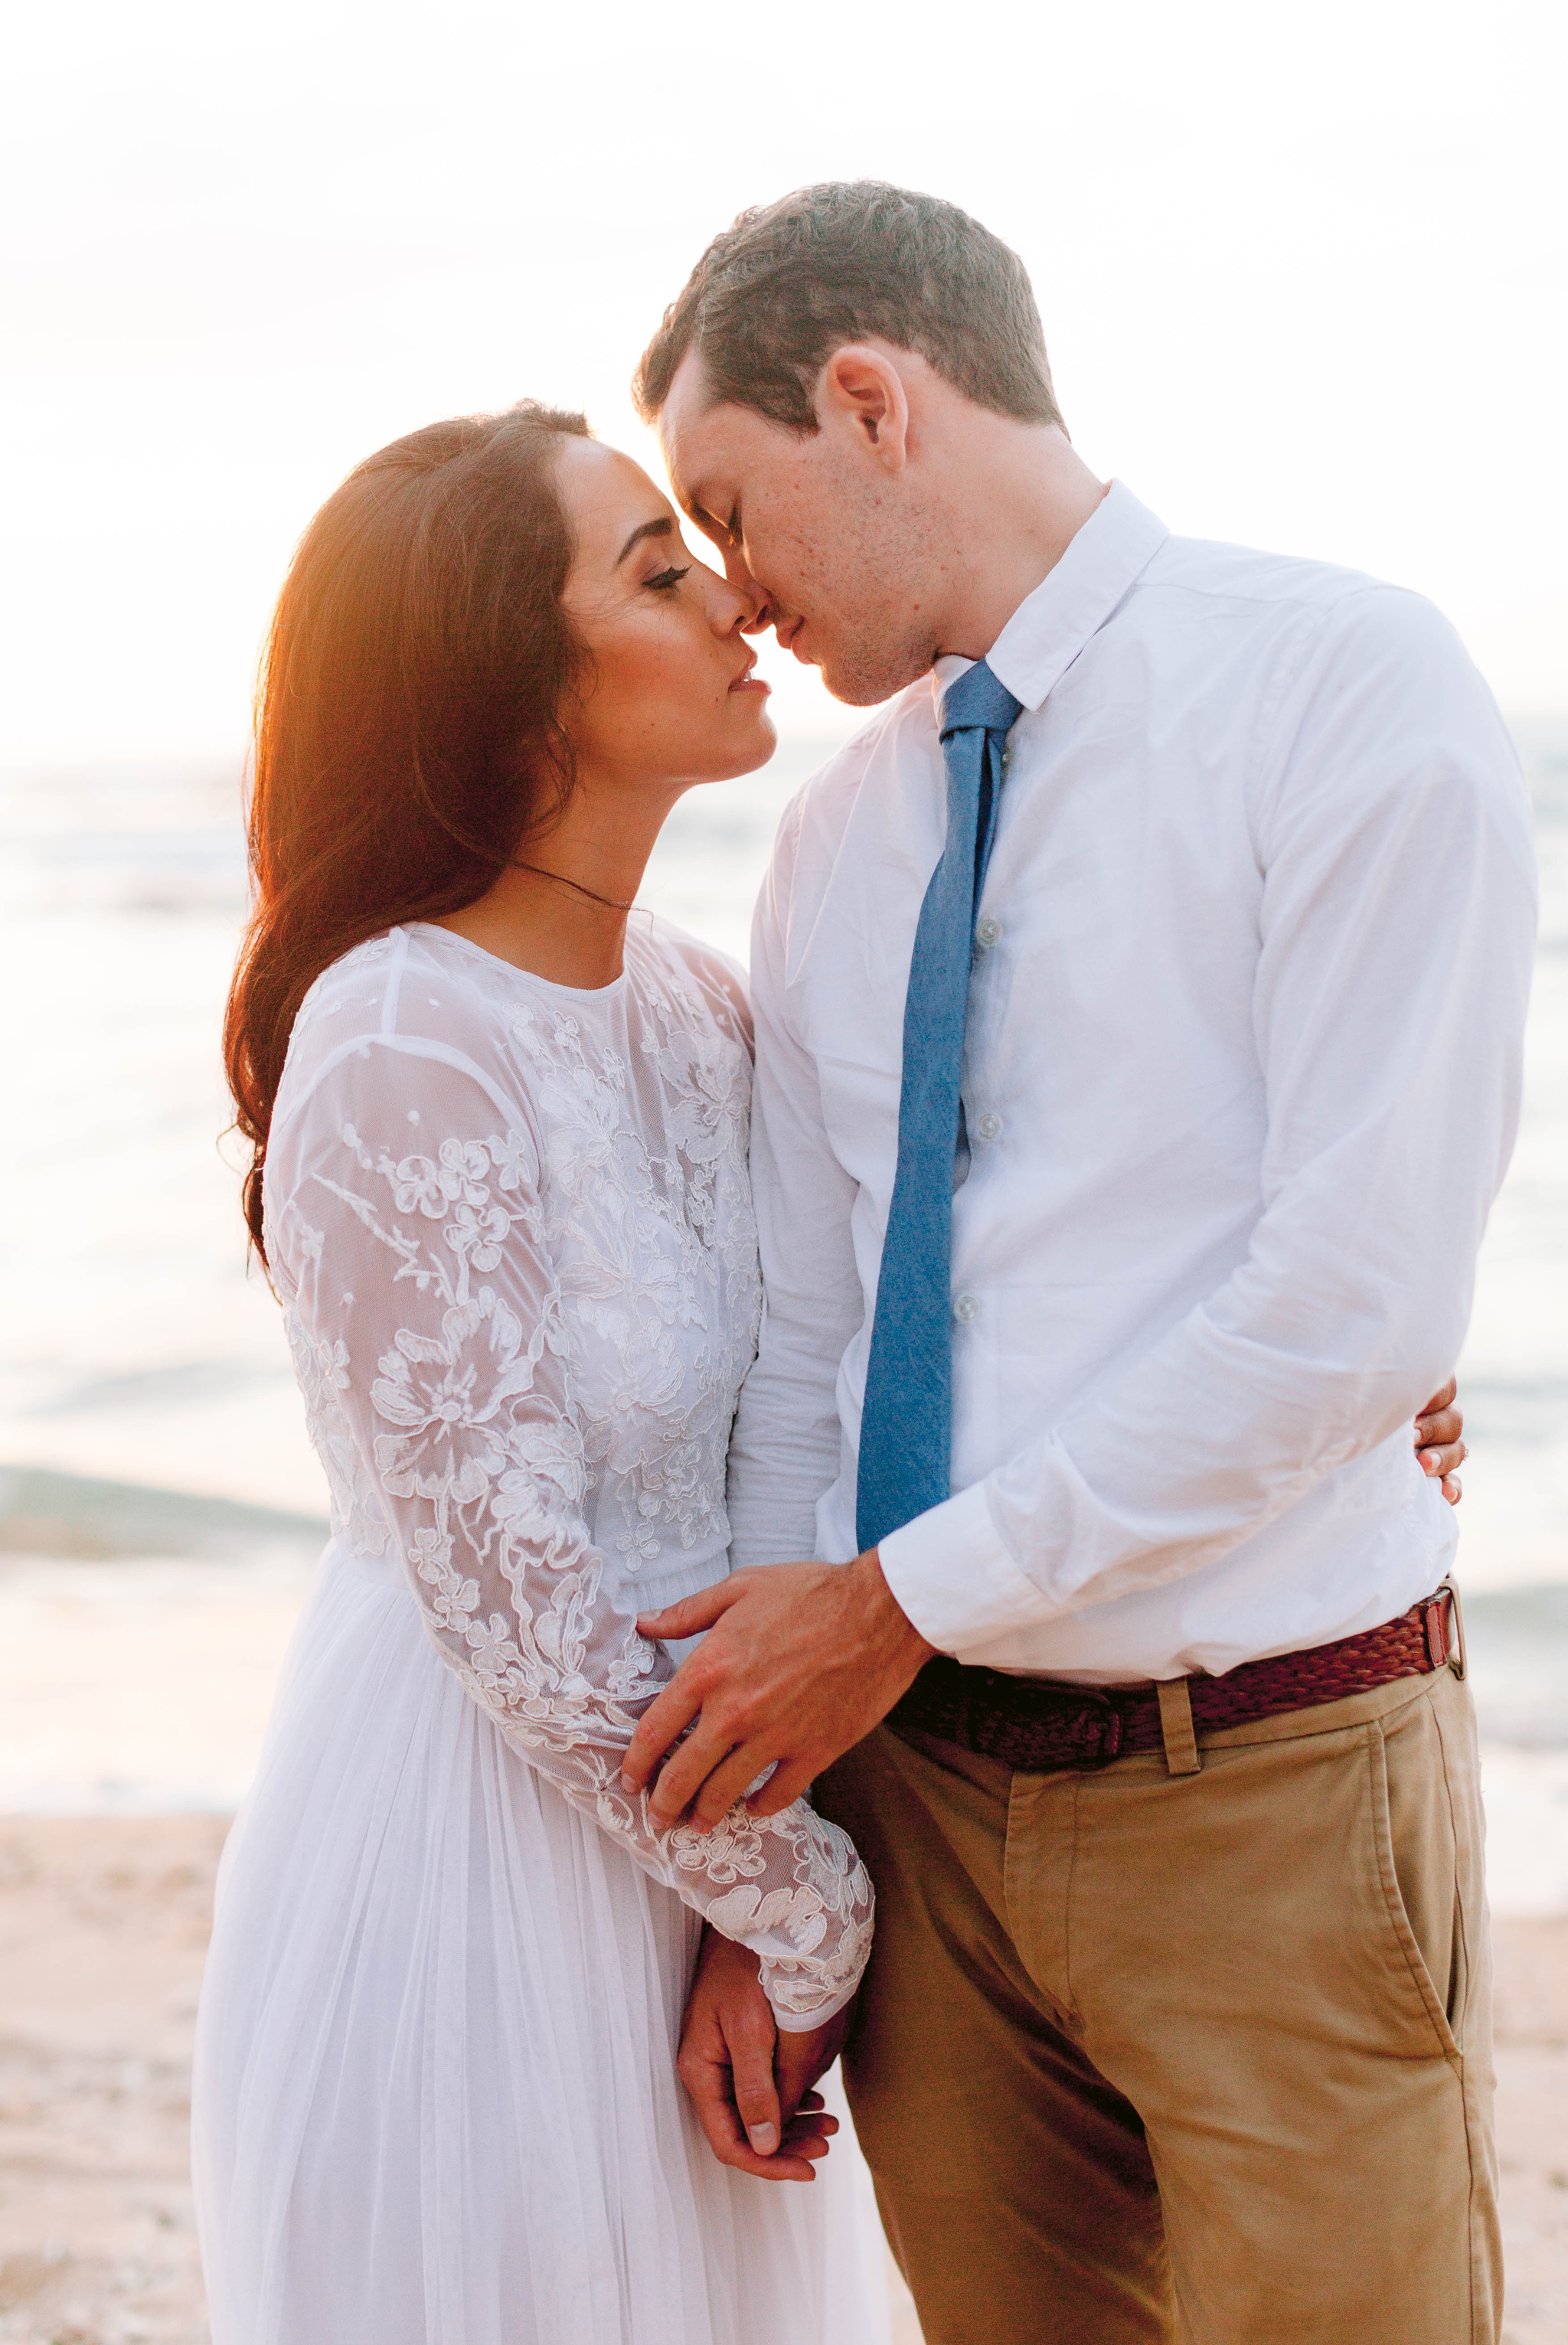  Bride and Groom Kissing - Beach Wedding Portraits at Sunset in Hawaii - Ana + Elijah - Wedding at Loulu Palm in Haleiwa, HI - Oahu Hawaii Wedding Photographer - #hawaiiweddingphotographer #oahuweddings #hawaiiweddings 